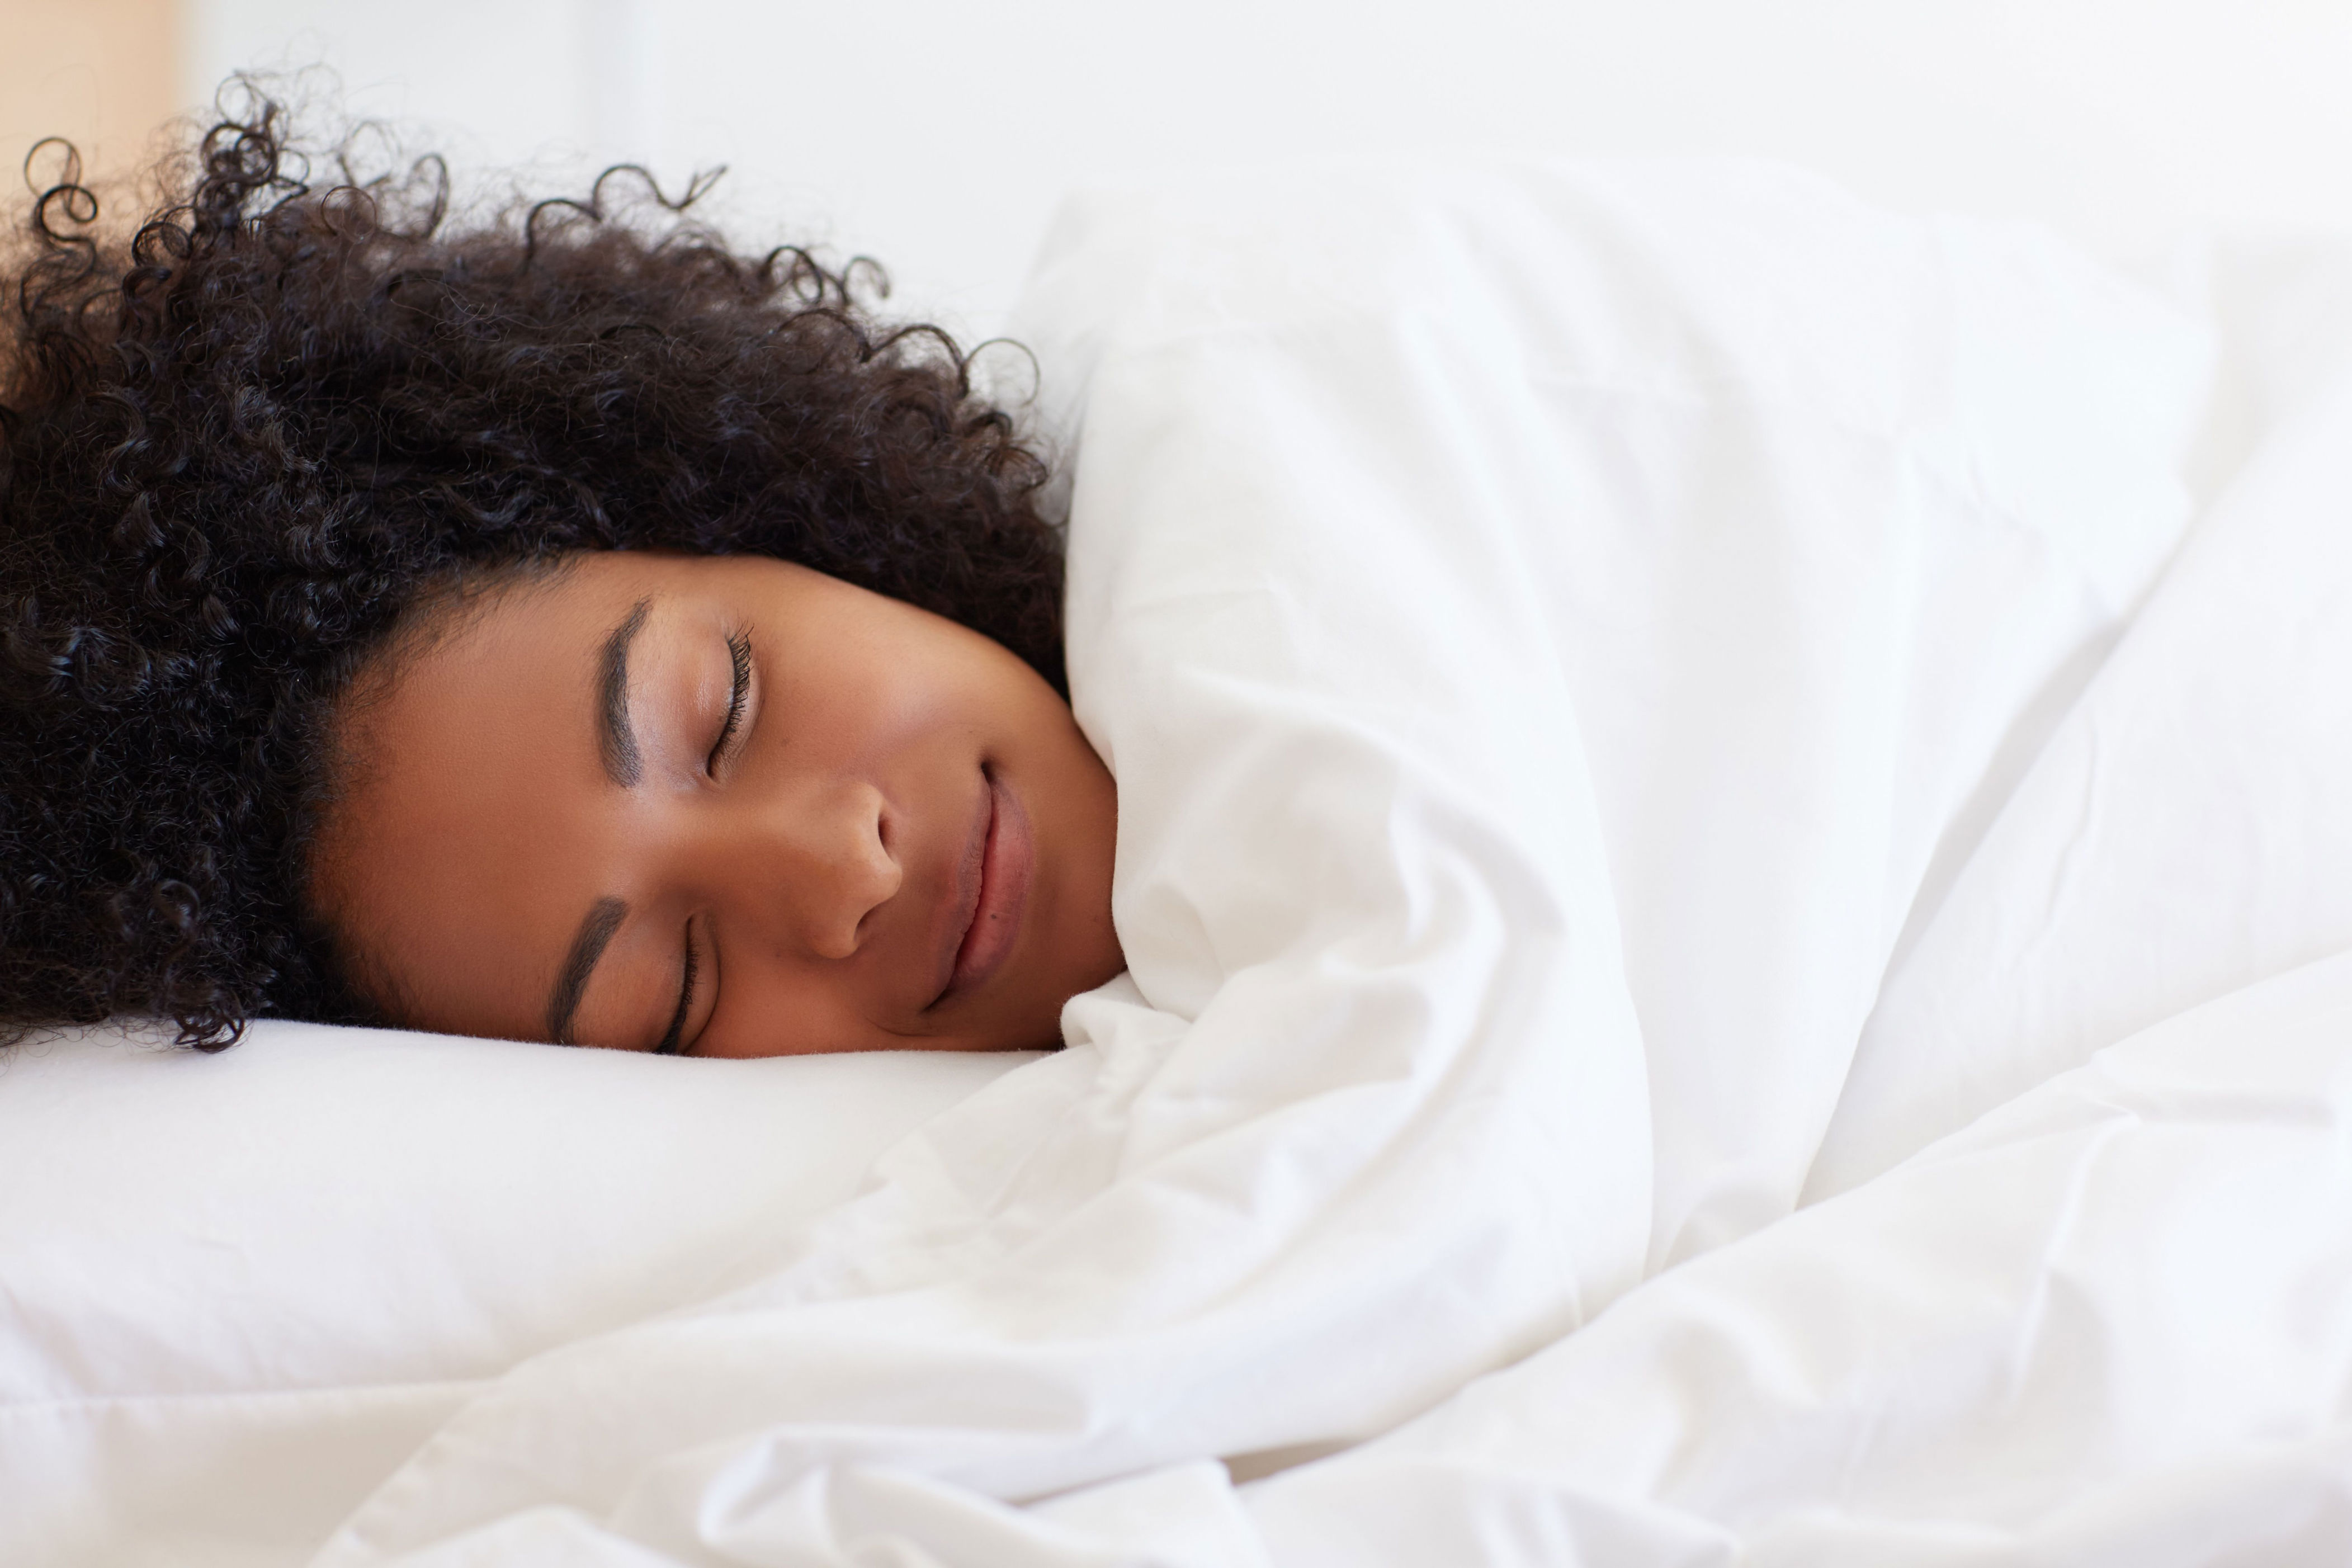 insomnio: los 6 tips para dormirse más rápido todas las noches